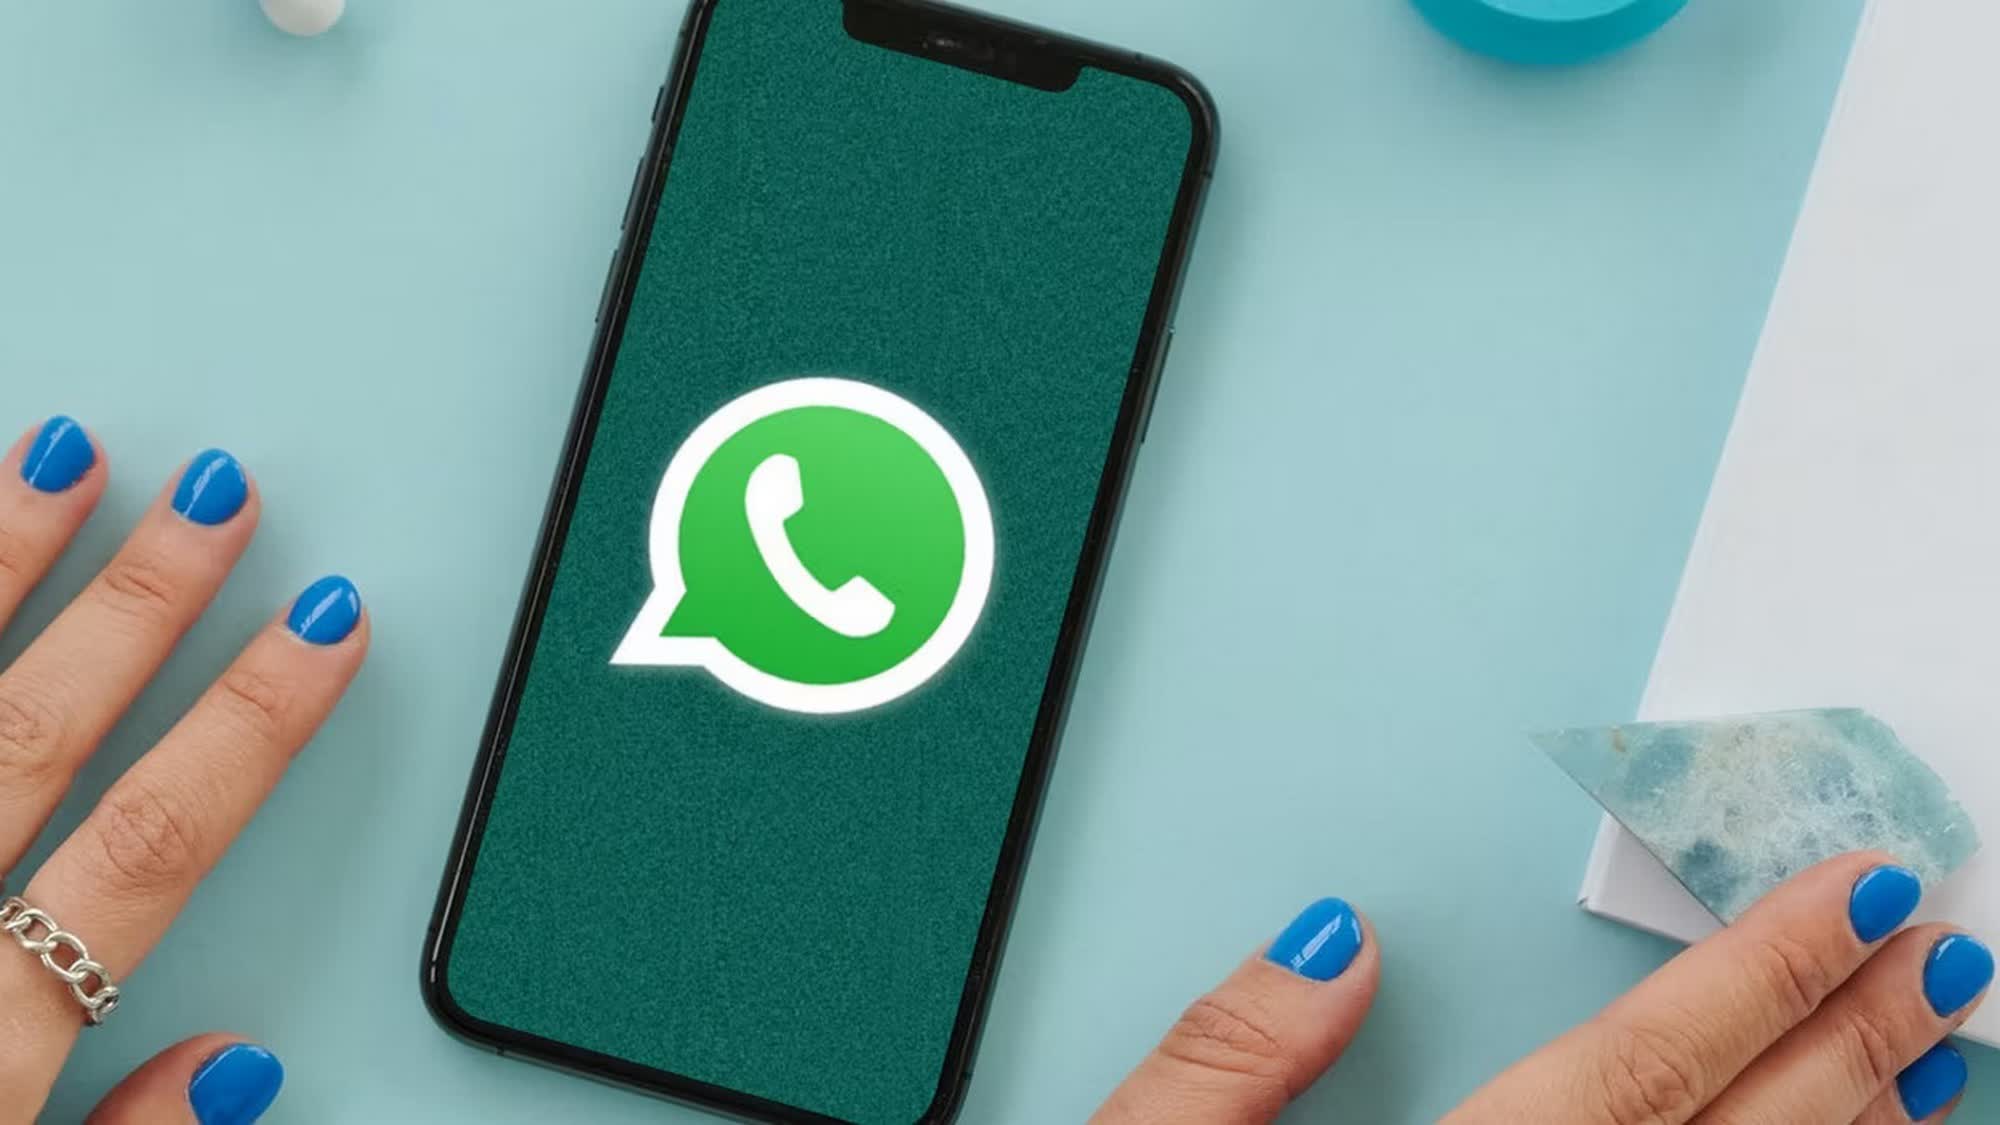 WhatsApp pronto introducirá soporte por chat de terceros para cumplir con la regulación de la UE